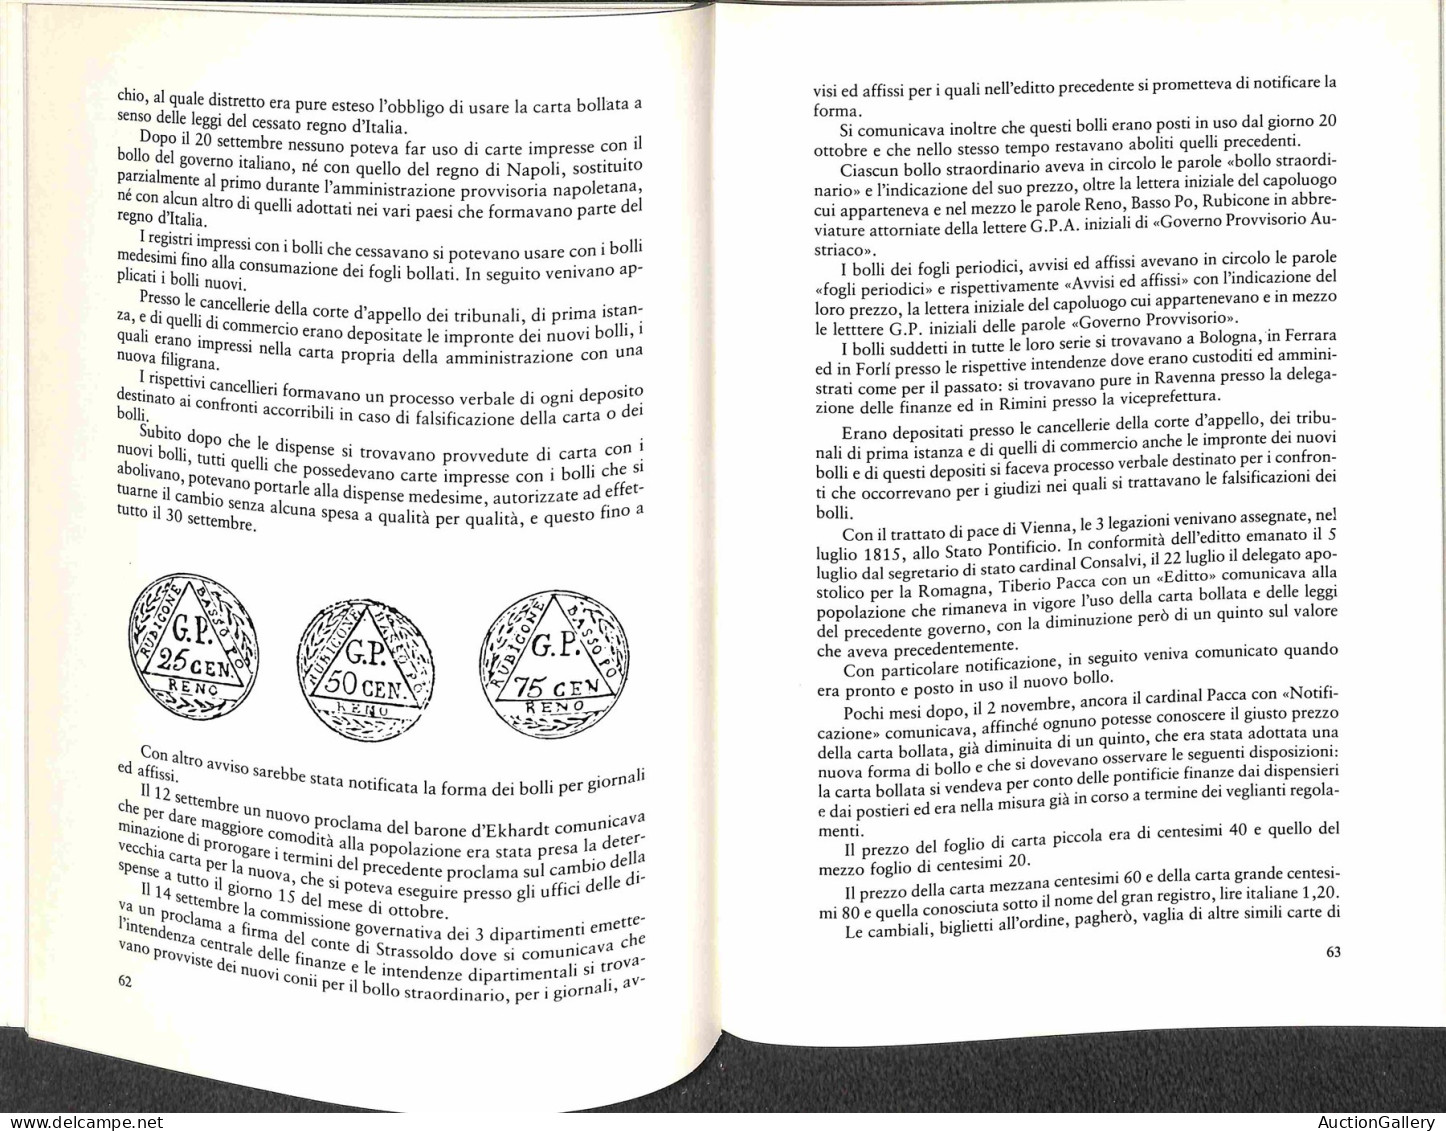 Biblioteca Filatelica - Italia - Storia Della Carta Bollata In Romagna 1741/1861 - G. Geminiani E G. Piccino - Ed. 1980 - Sonstige & Ohne Zuordnung